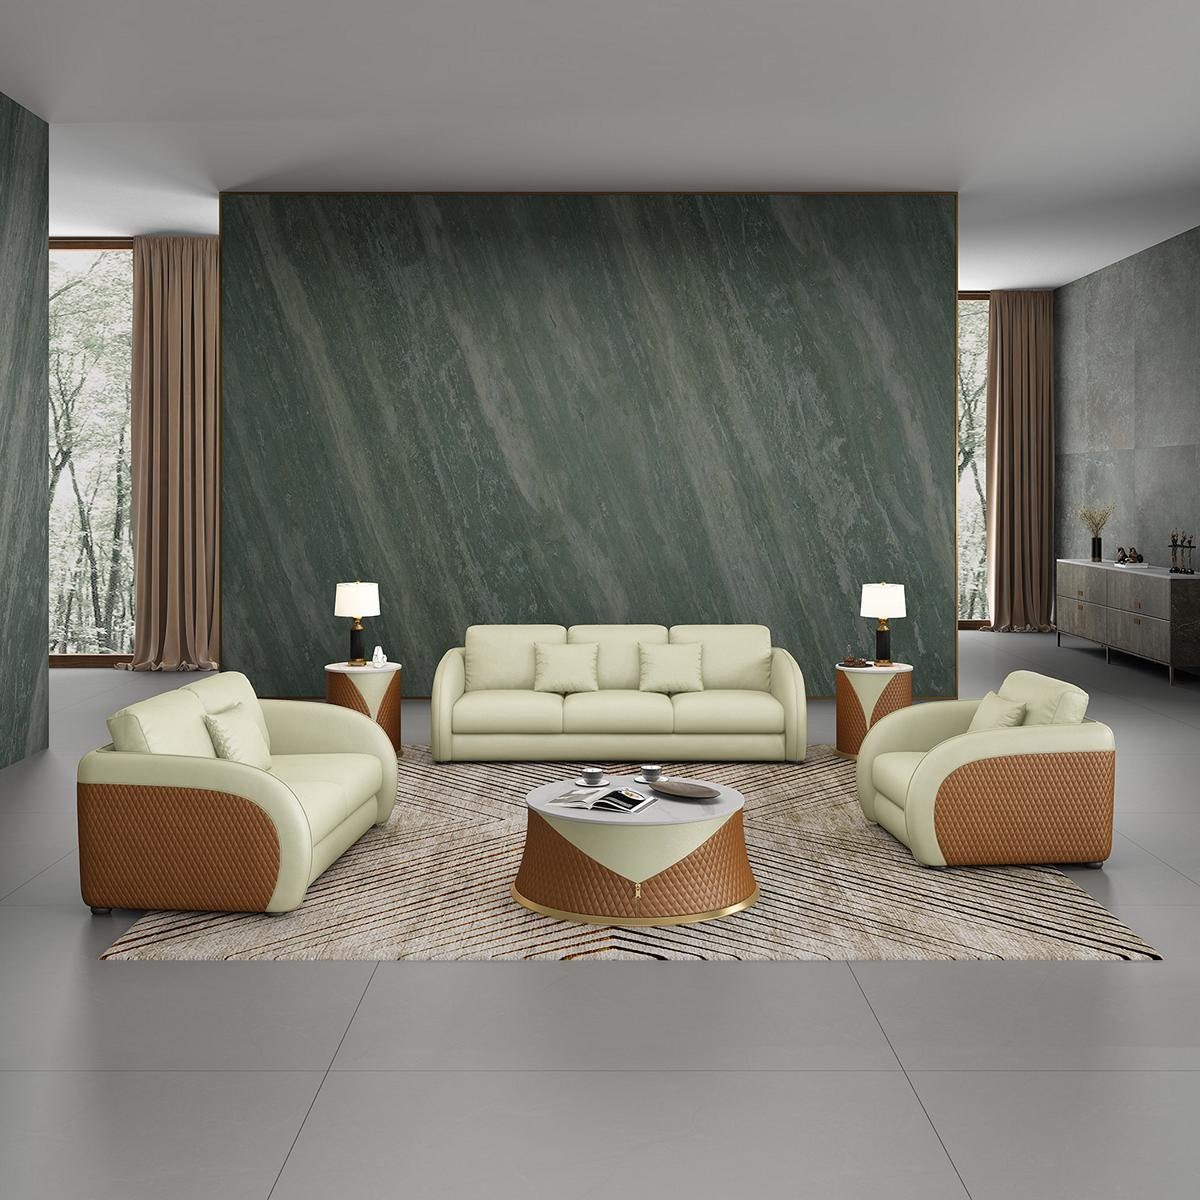 JVmoebel Wohnzimmer-Set, Sofagarnitur 3 2 1 Sitzer Set Design Sofa Polster Couchen Couch Grün/Braun